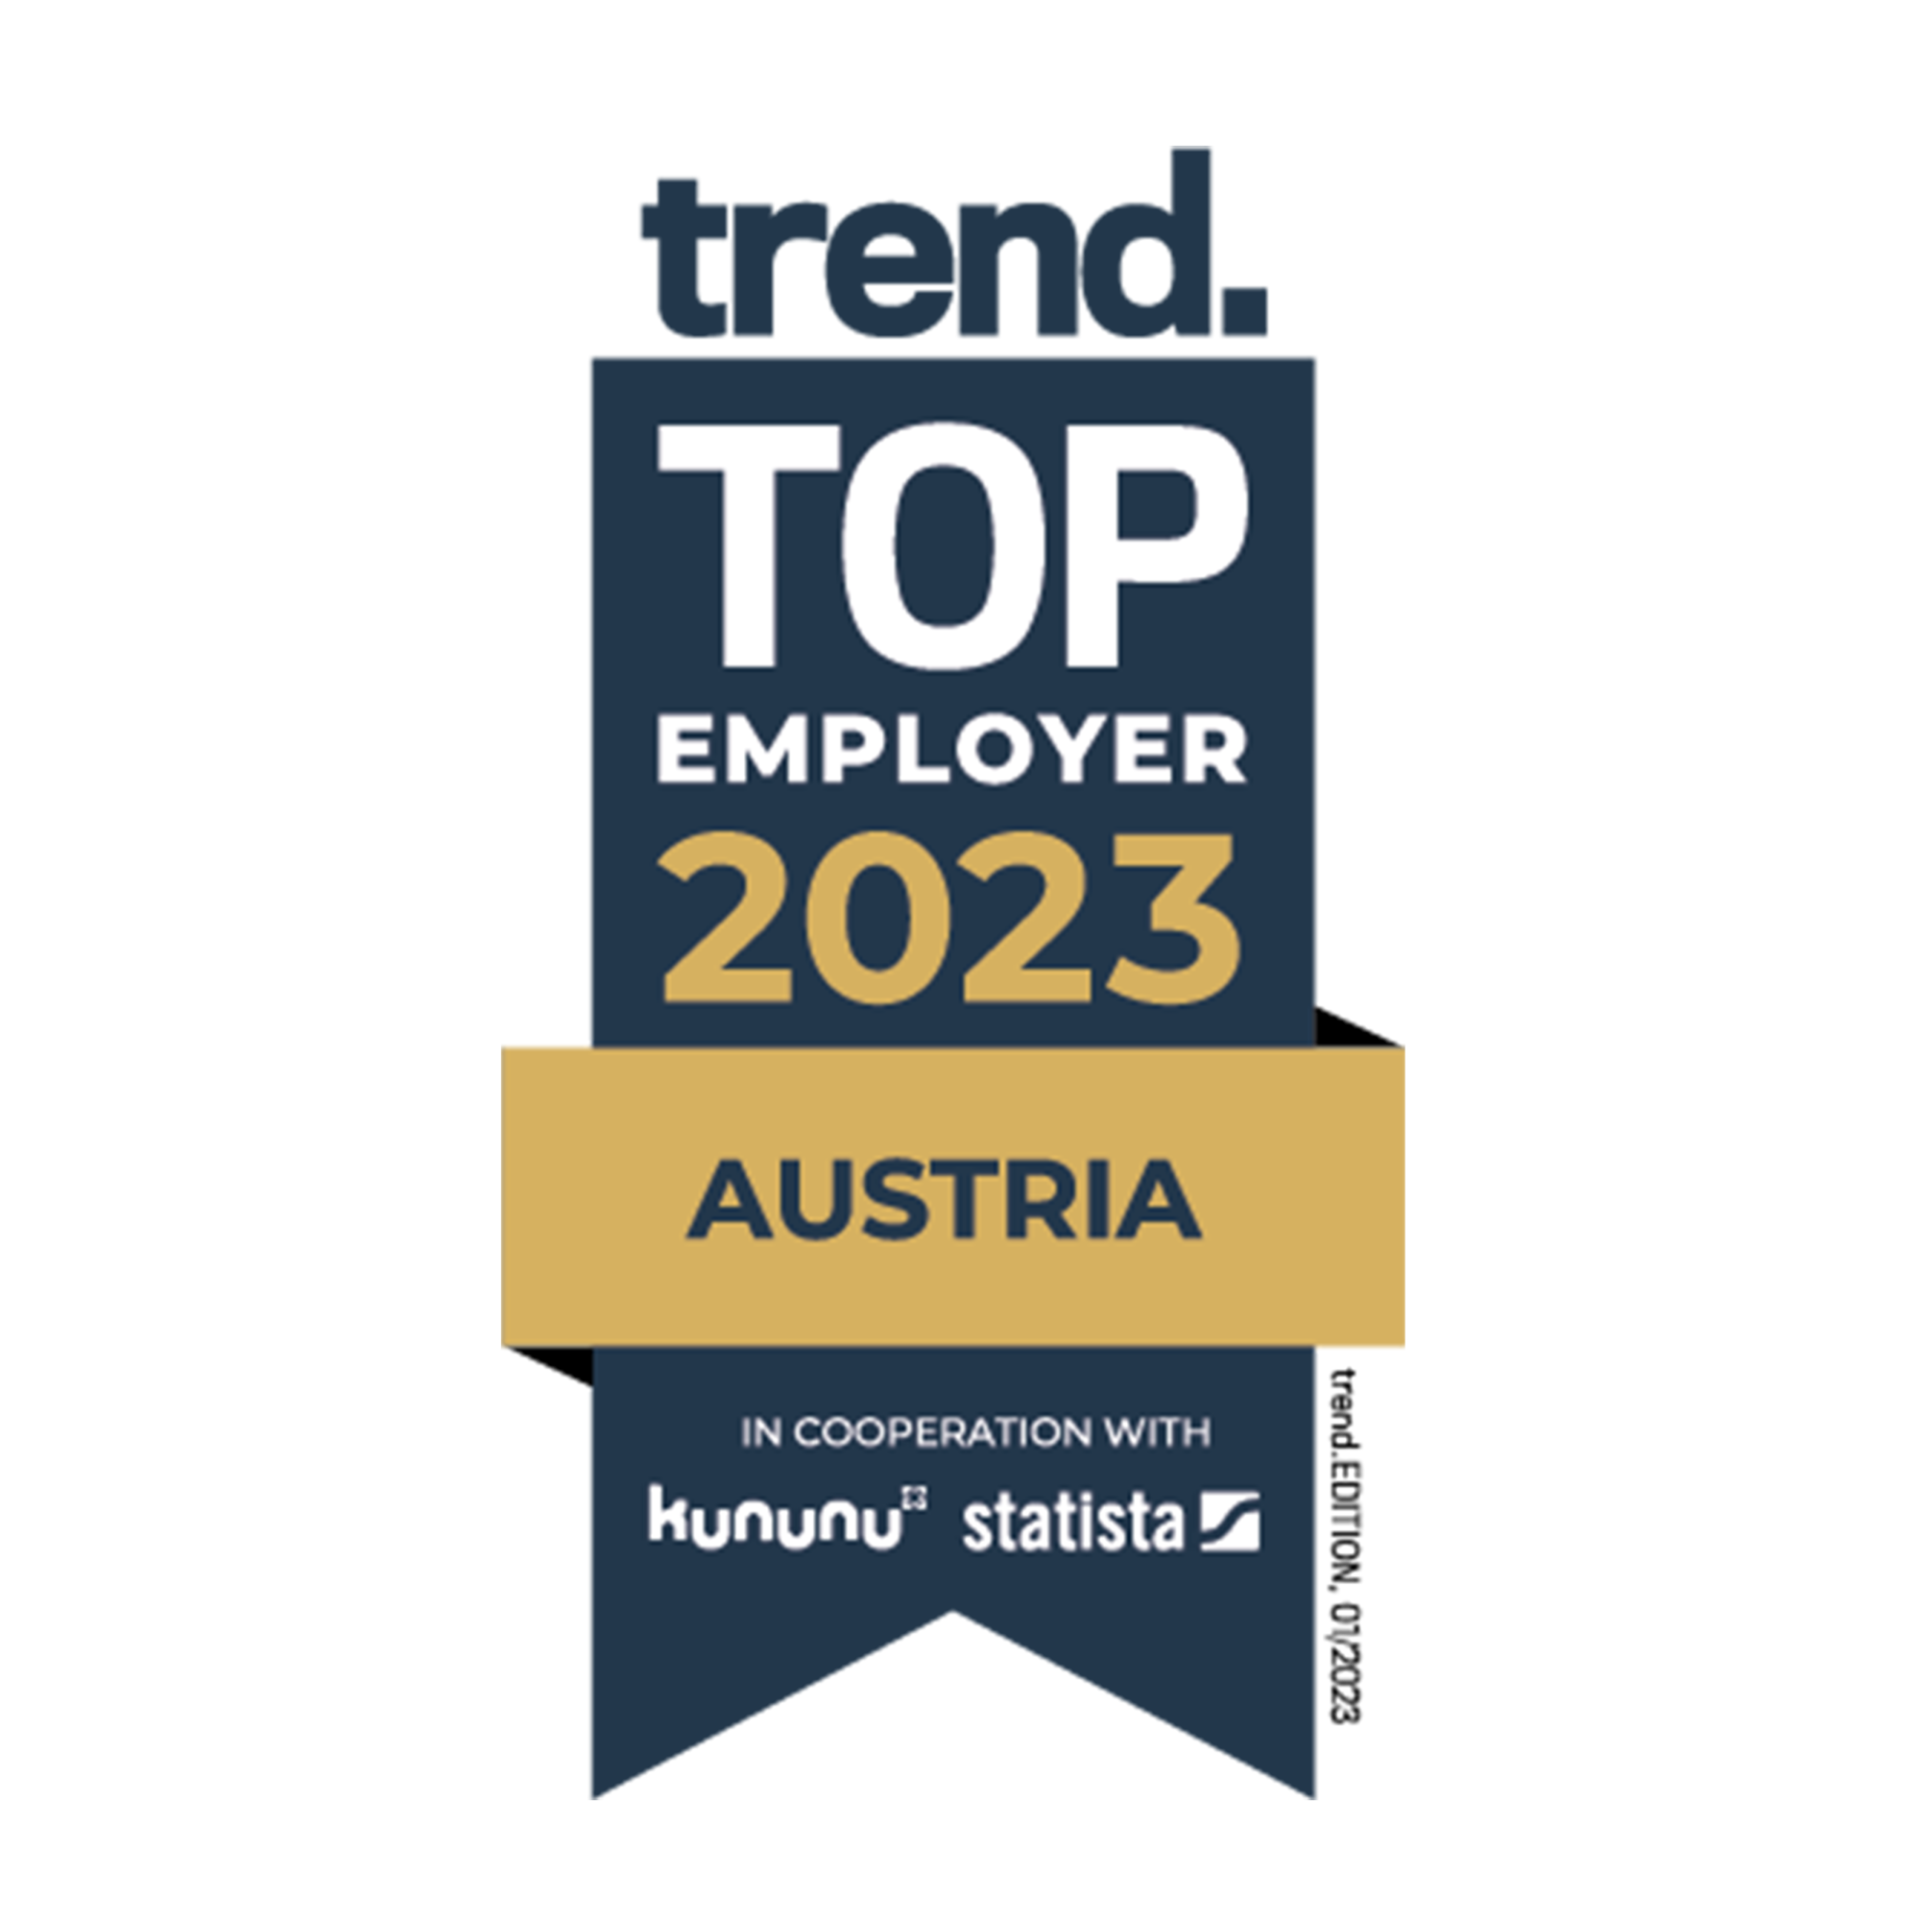 Mejor empleador 2023 - Austria